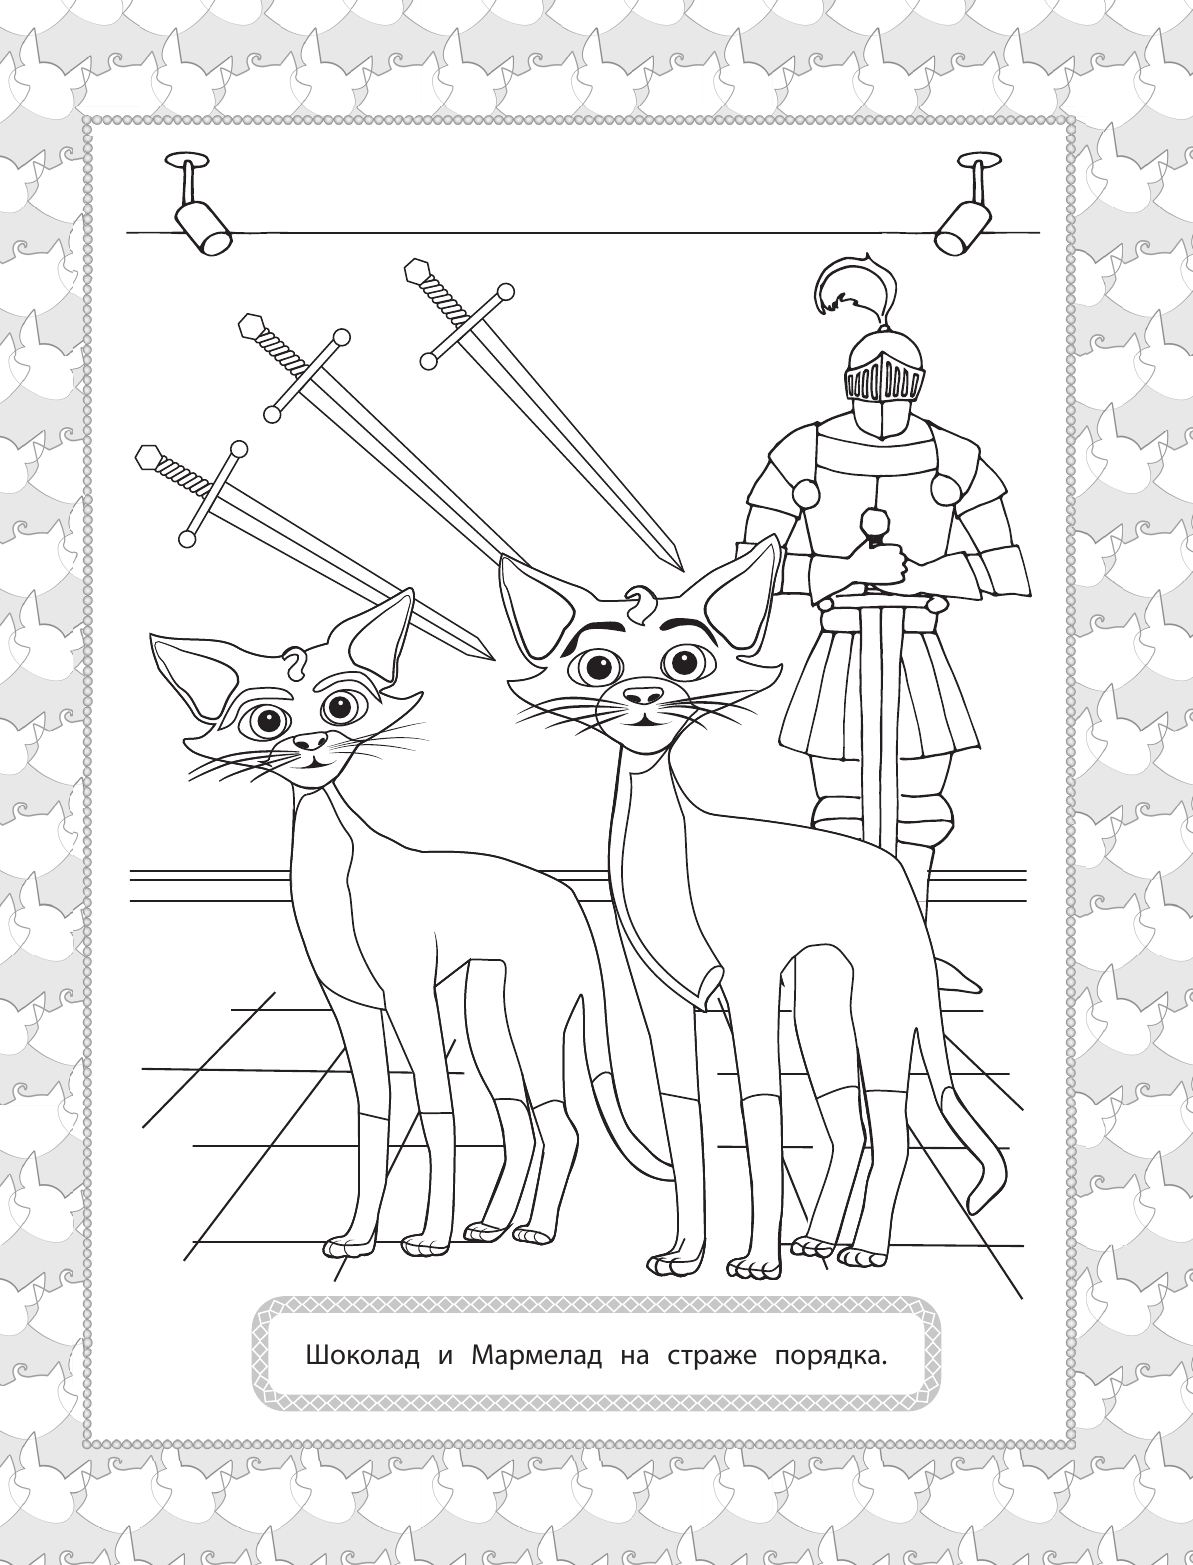  Коты Эрмитажа. Раскраска (Защитники искусства) - страница 2